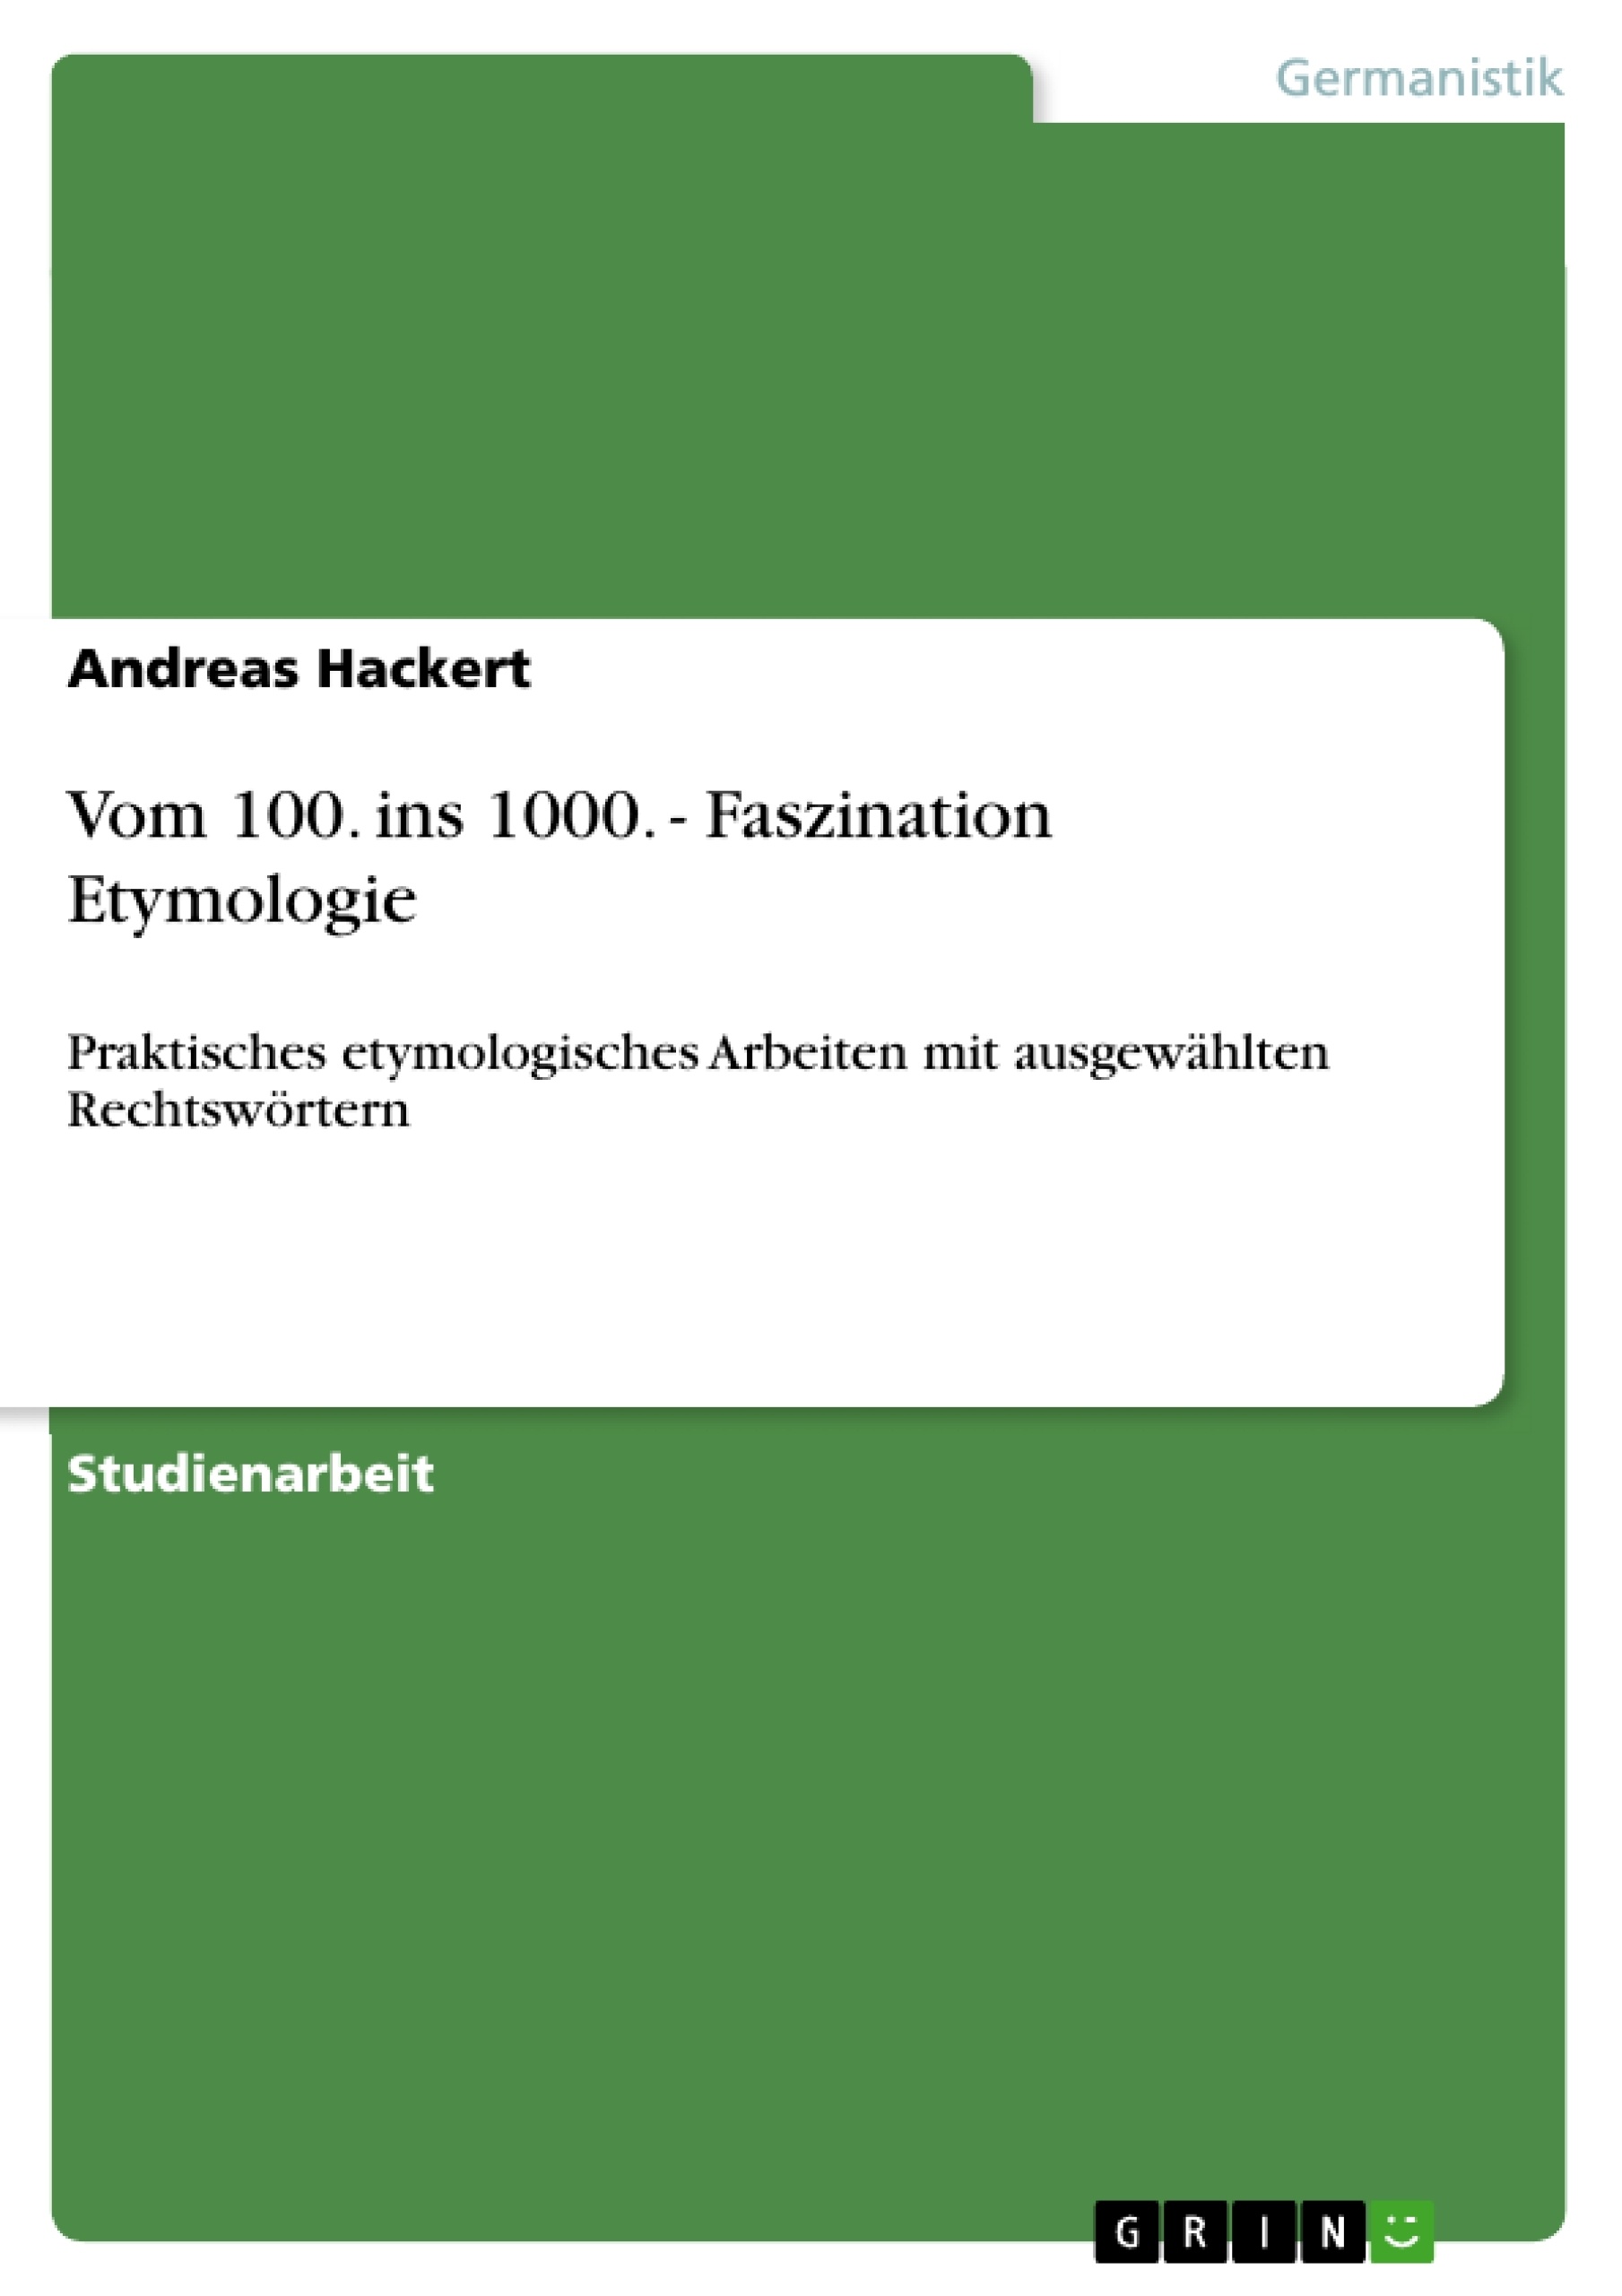 Title: Vom 100. ins 1000. - Faszination Etymologie